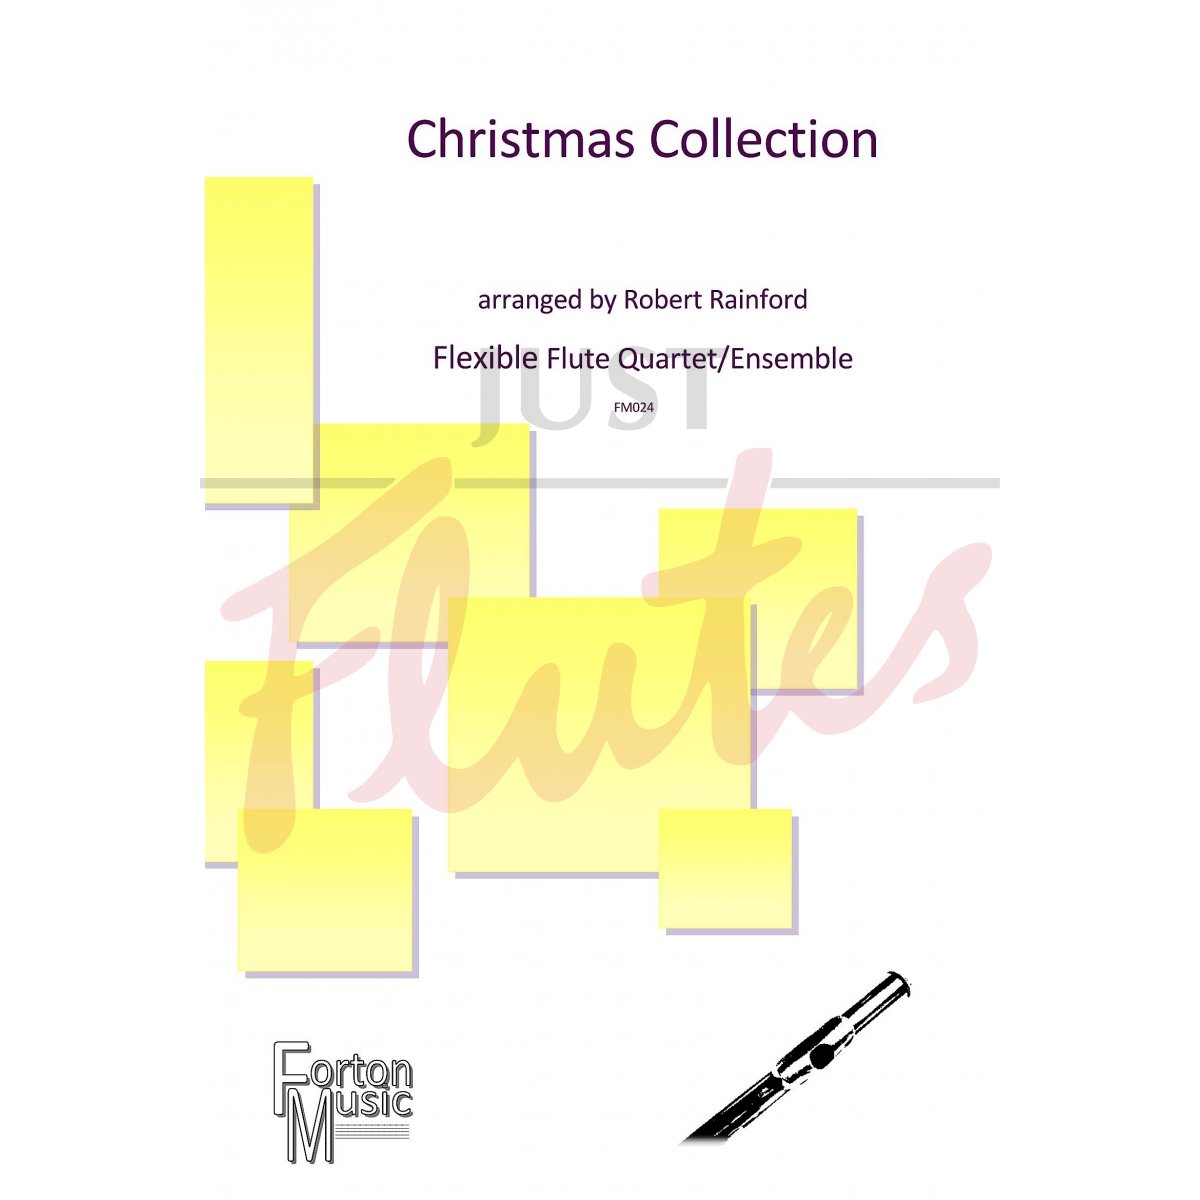 Christmas Collection for Flexible Flute Quartet/Ensemble